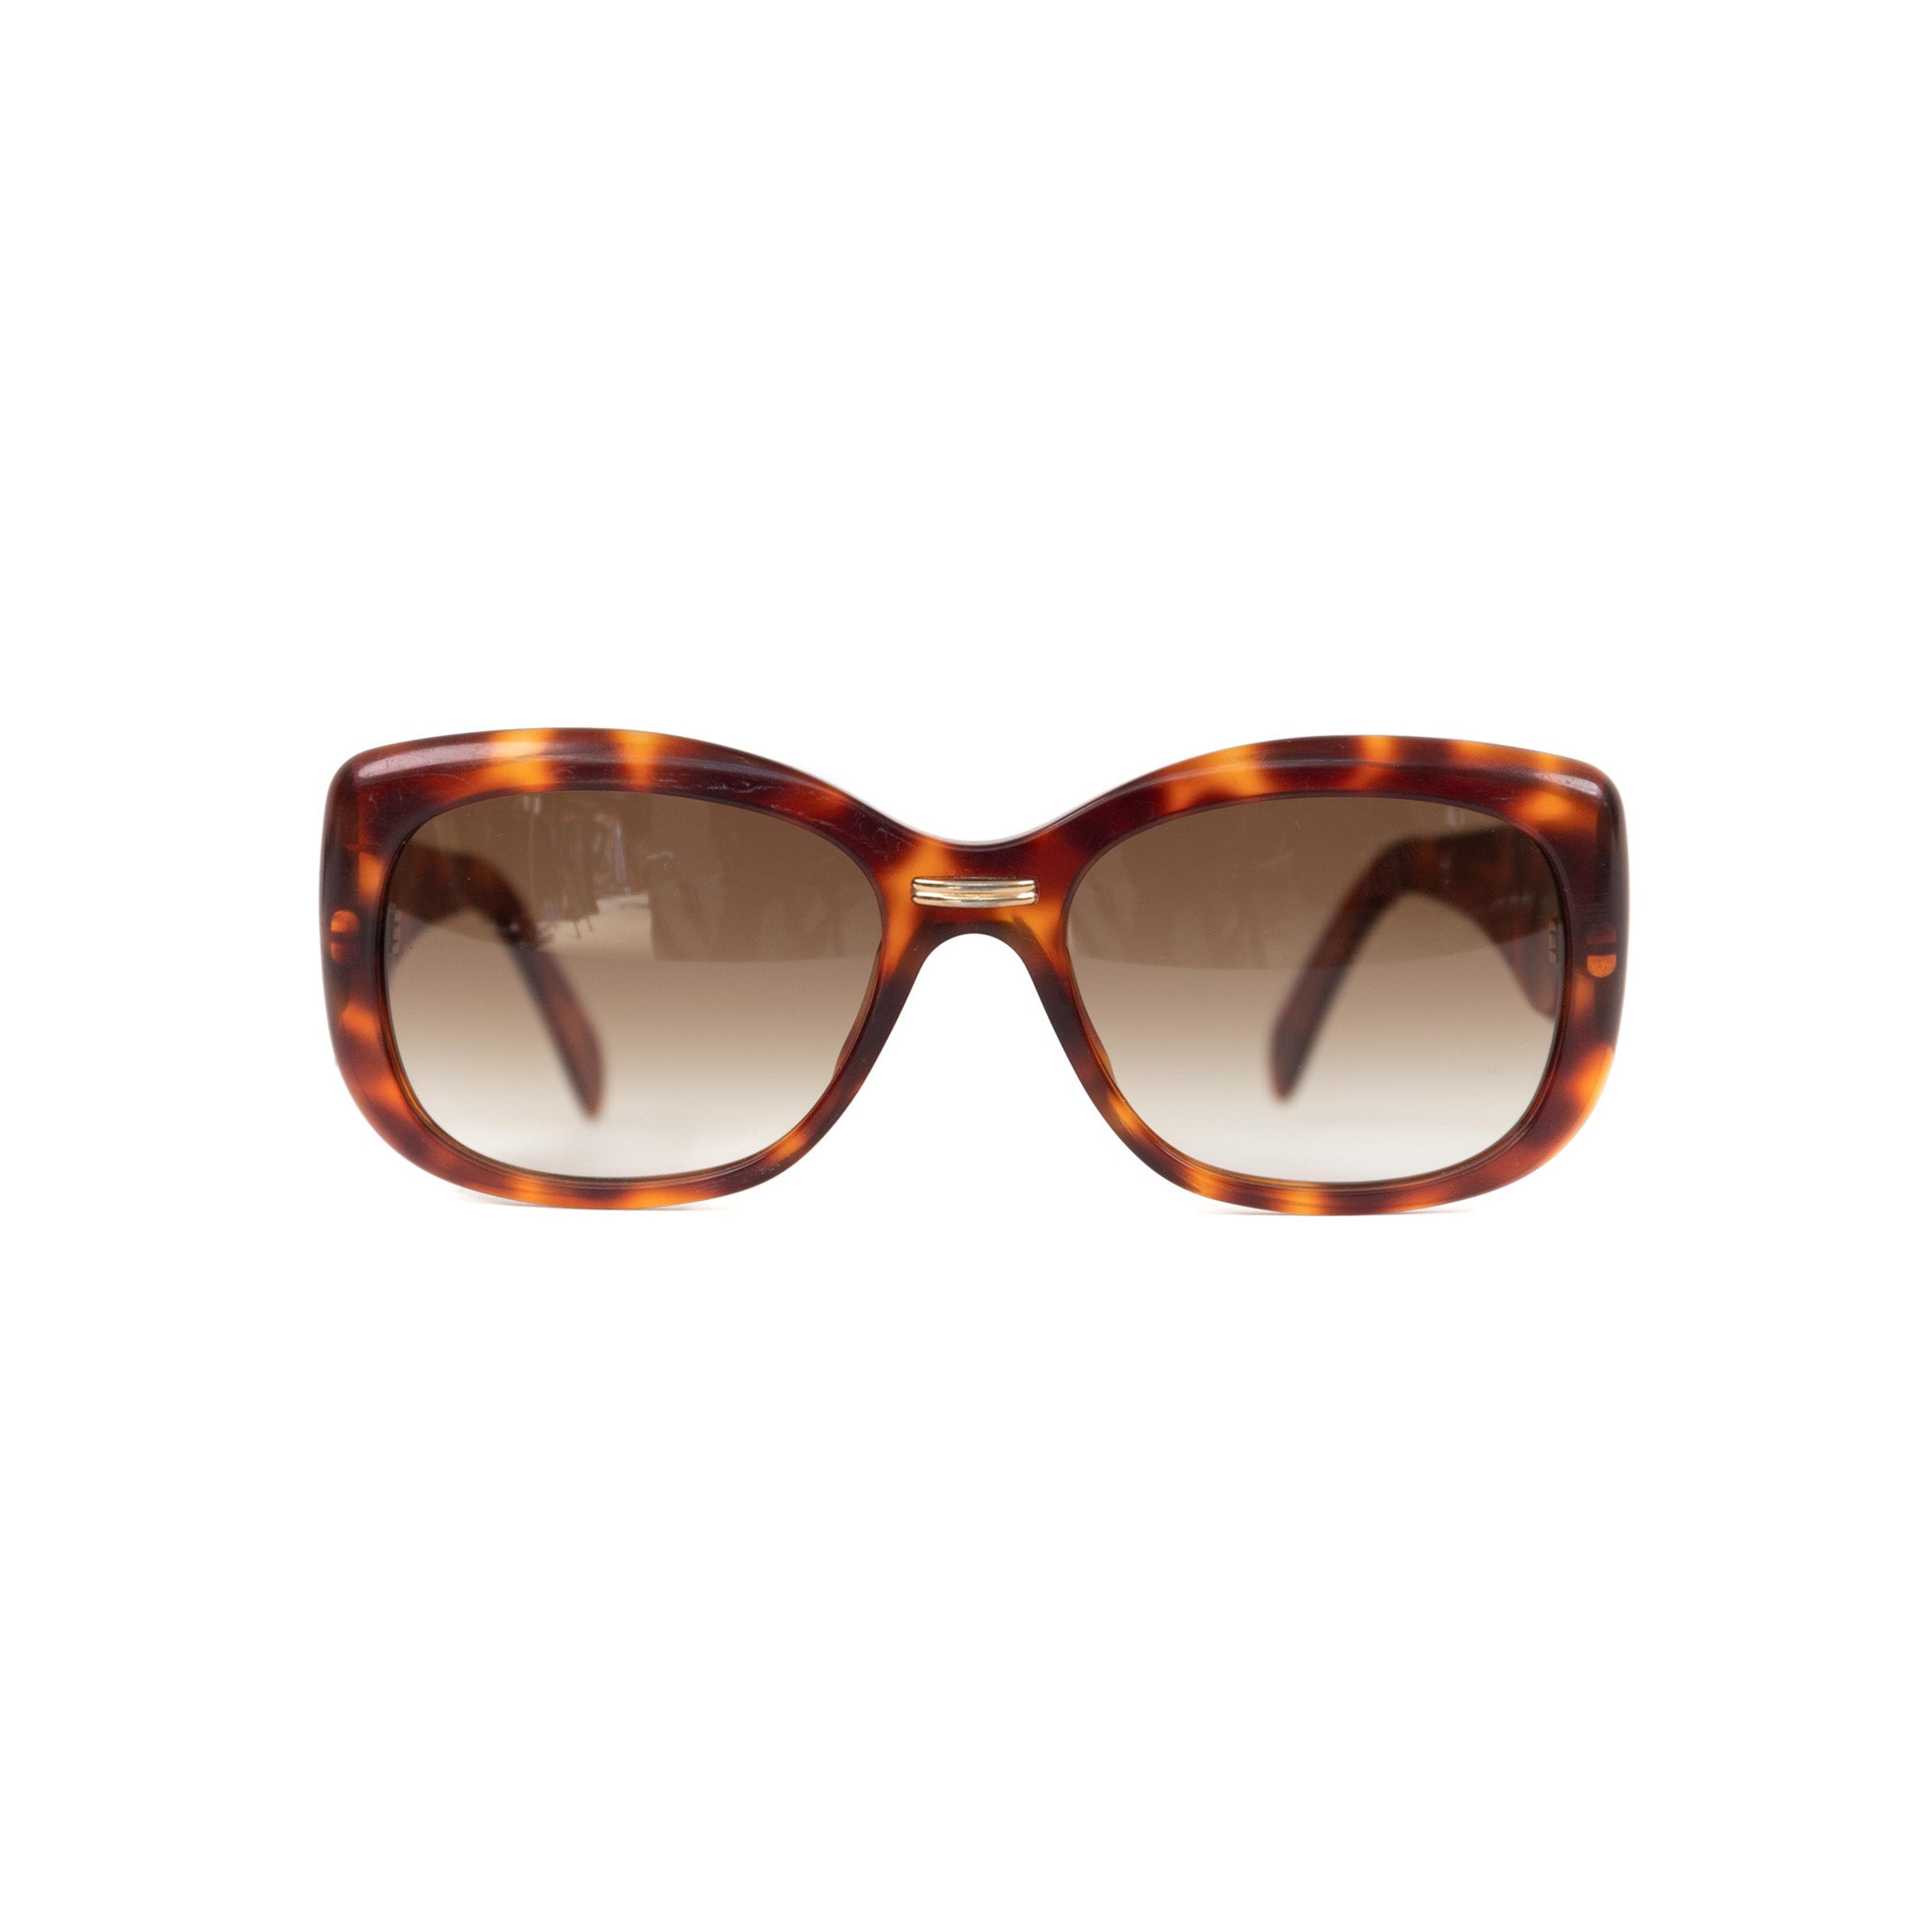 Alternate View 1 of Yves Saint Laurent Tortoise Sunglasses